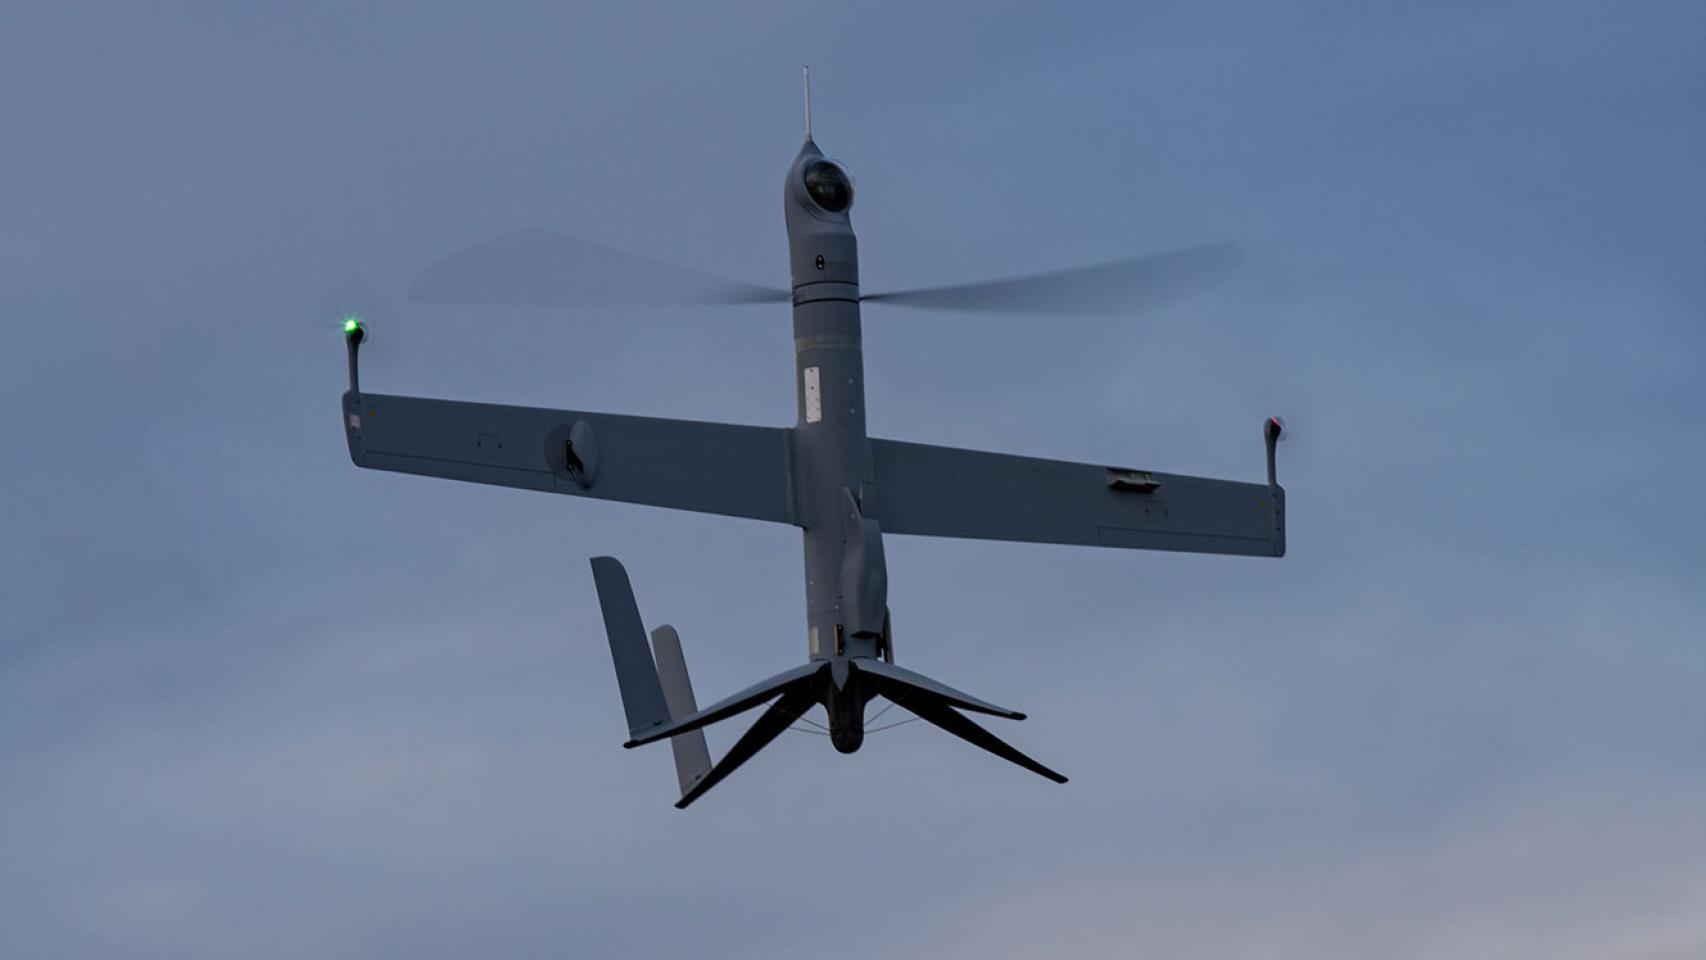 Dron Flexrotor en su fase de ascenso, se aprecia las patas desplegadas para el lanzamiento vertical